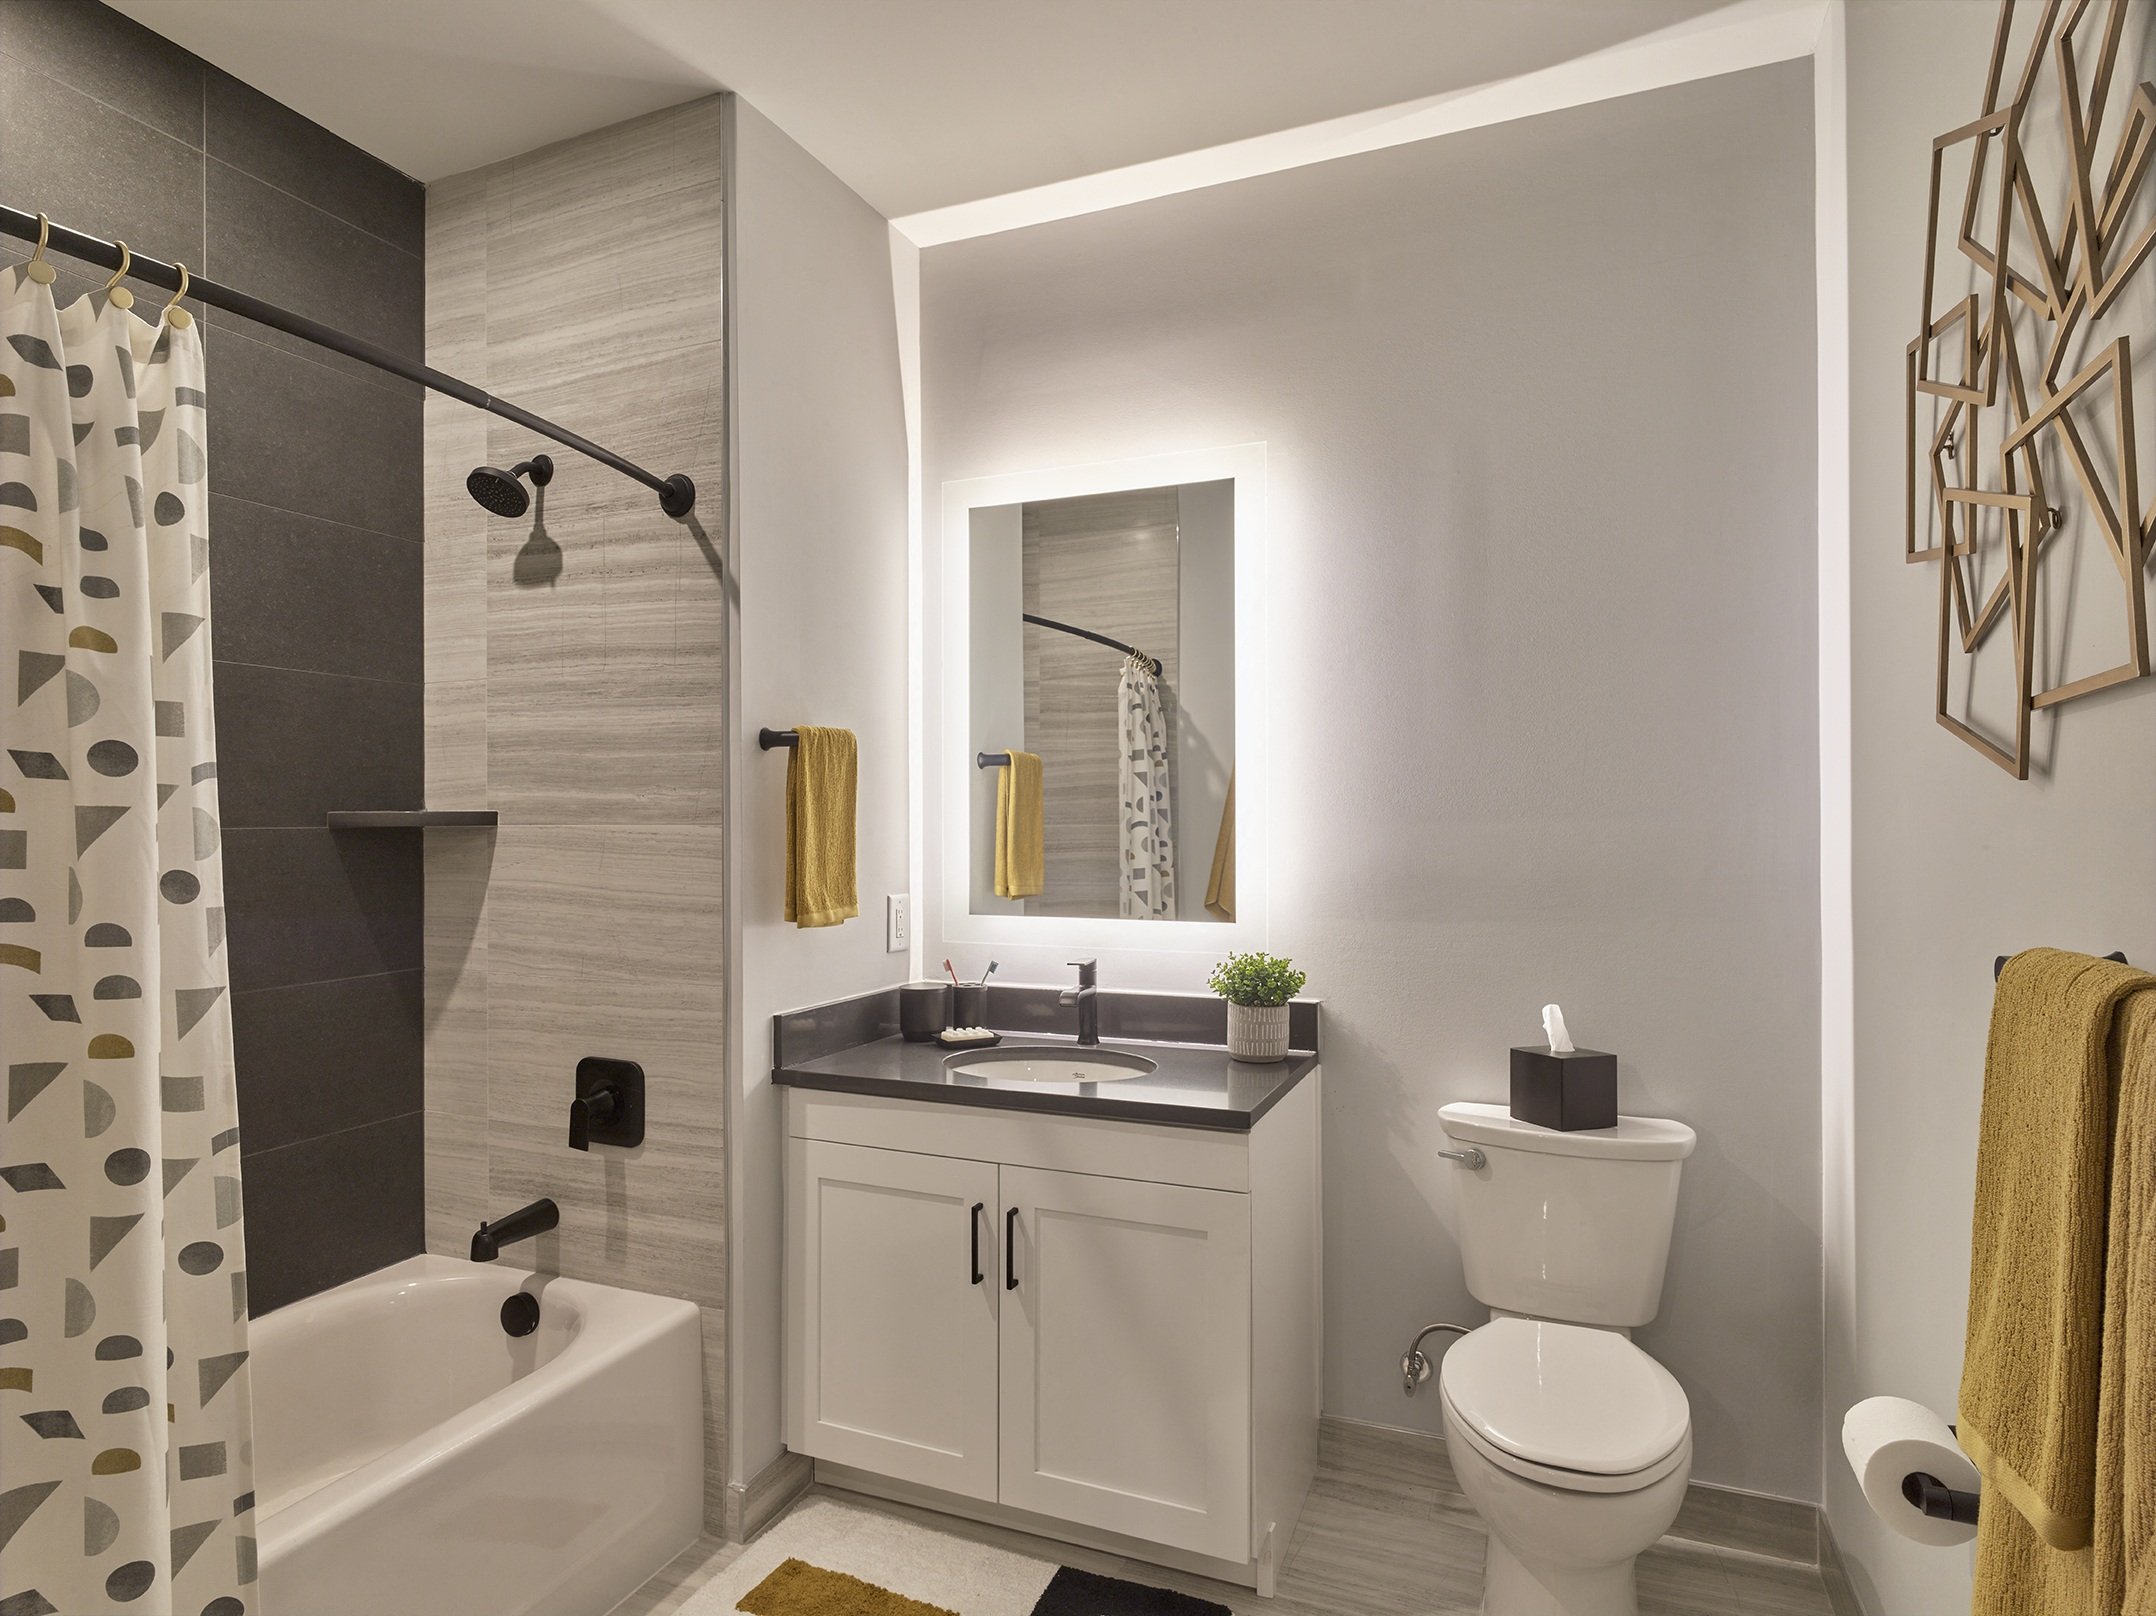 spa-like bath, tiled shower stall, backlit vanity,